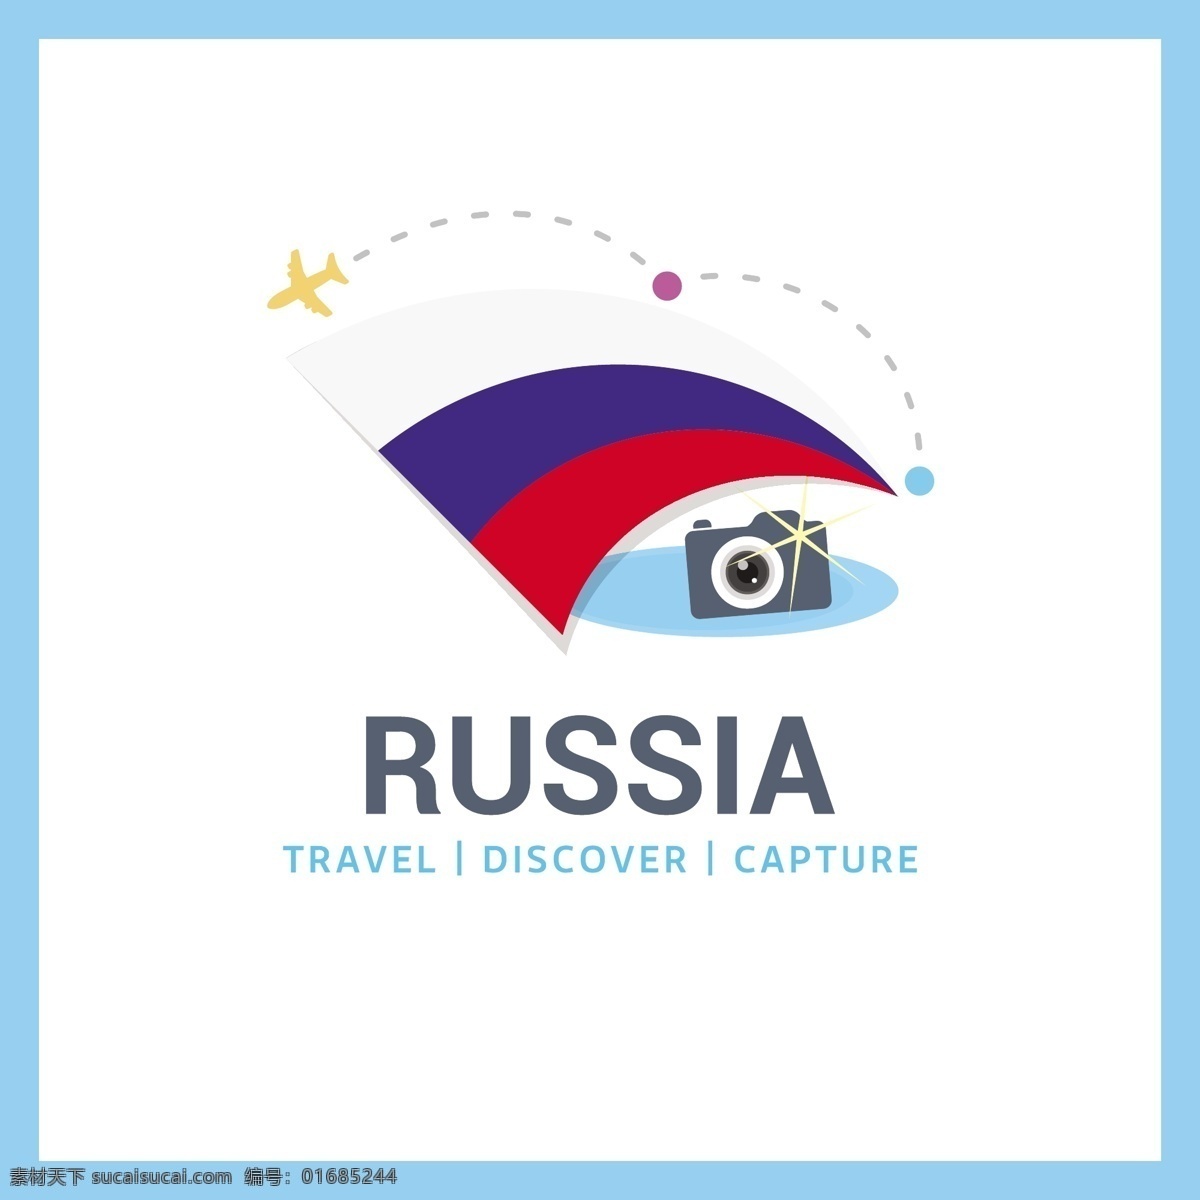 去俄罗斯旅行 背景 标志 标签 旅行 徽章 地图 世界国旗 国徽 旅游 度假 背景下 俄罗斯的旅程 旅客 行李 发现 在世界范围内 捕捉 公民